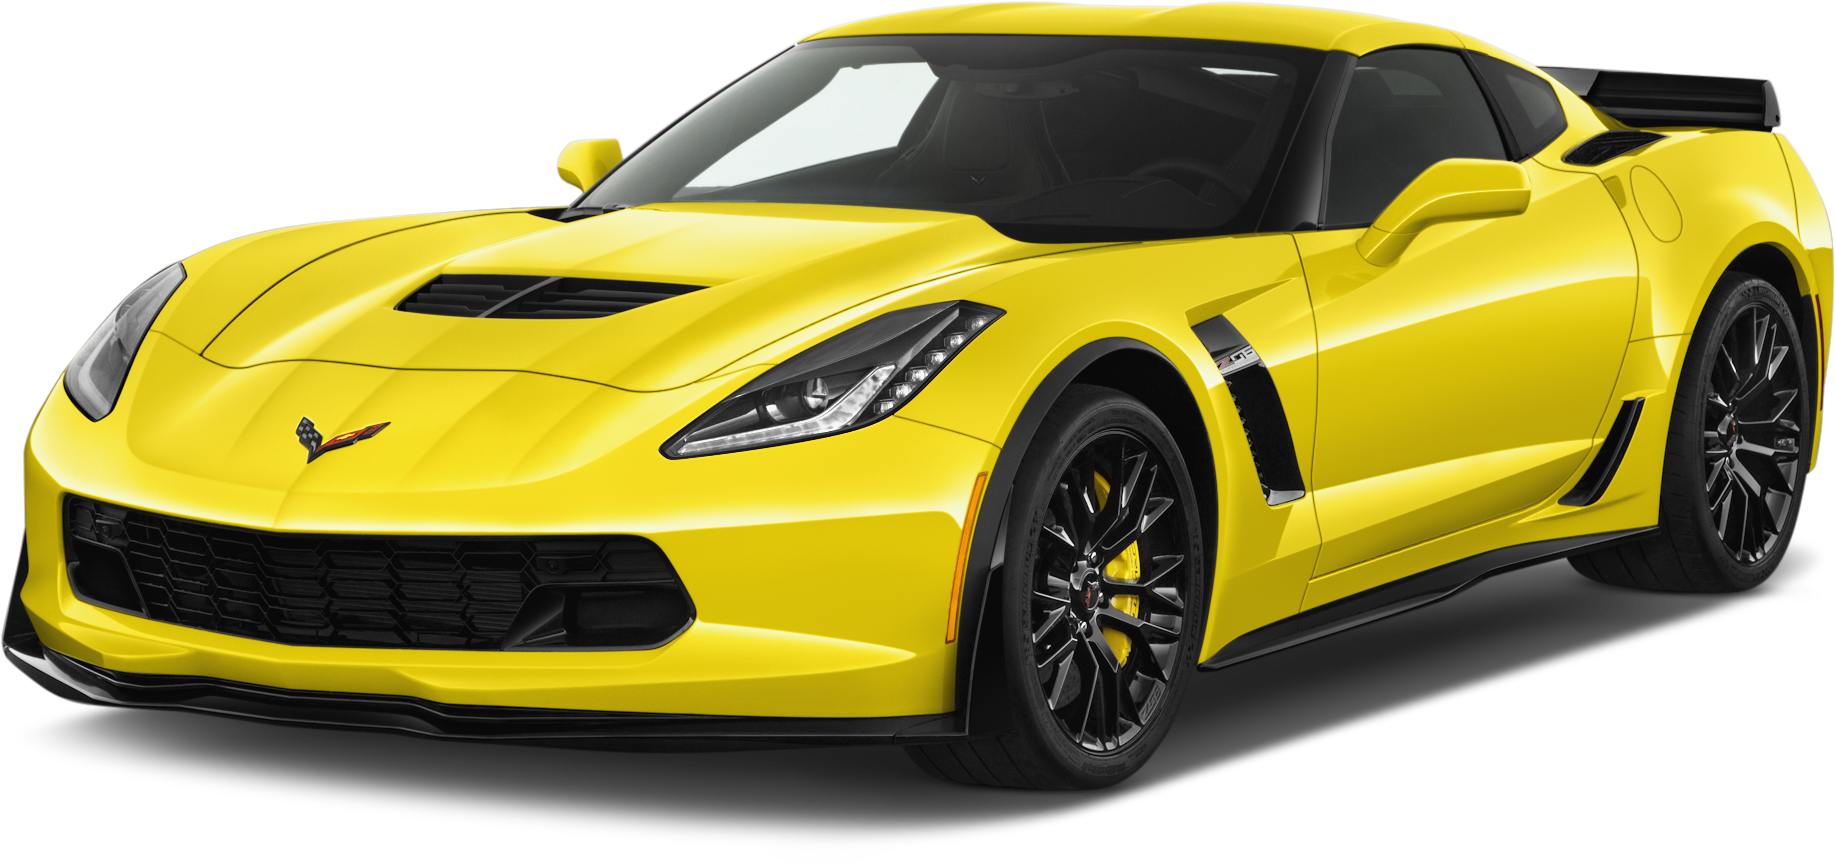 Chevrolet Corvette Png Image - 2018 Chevrolet Corvette Msrp (2048x1360), Png Download